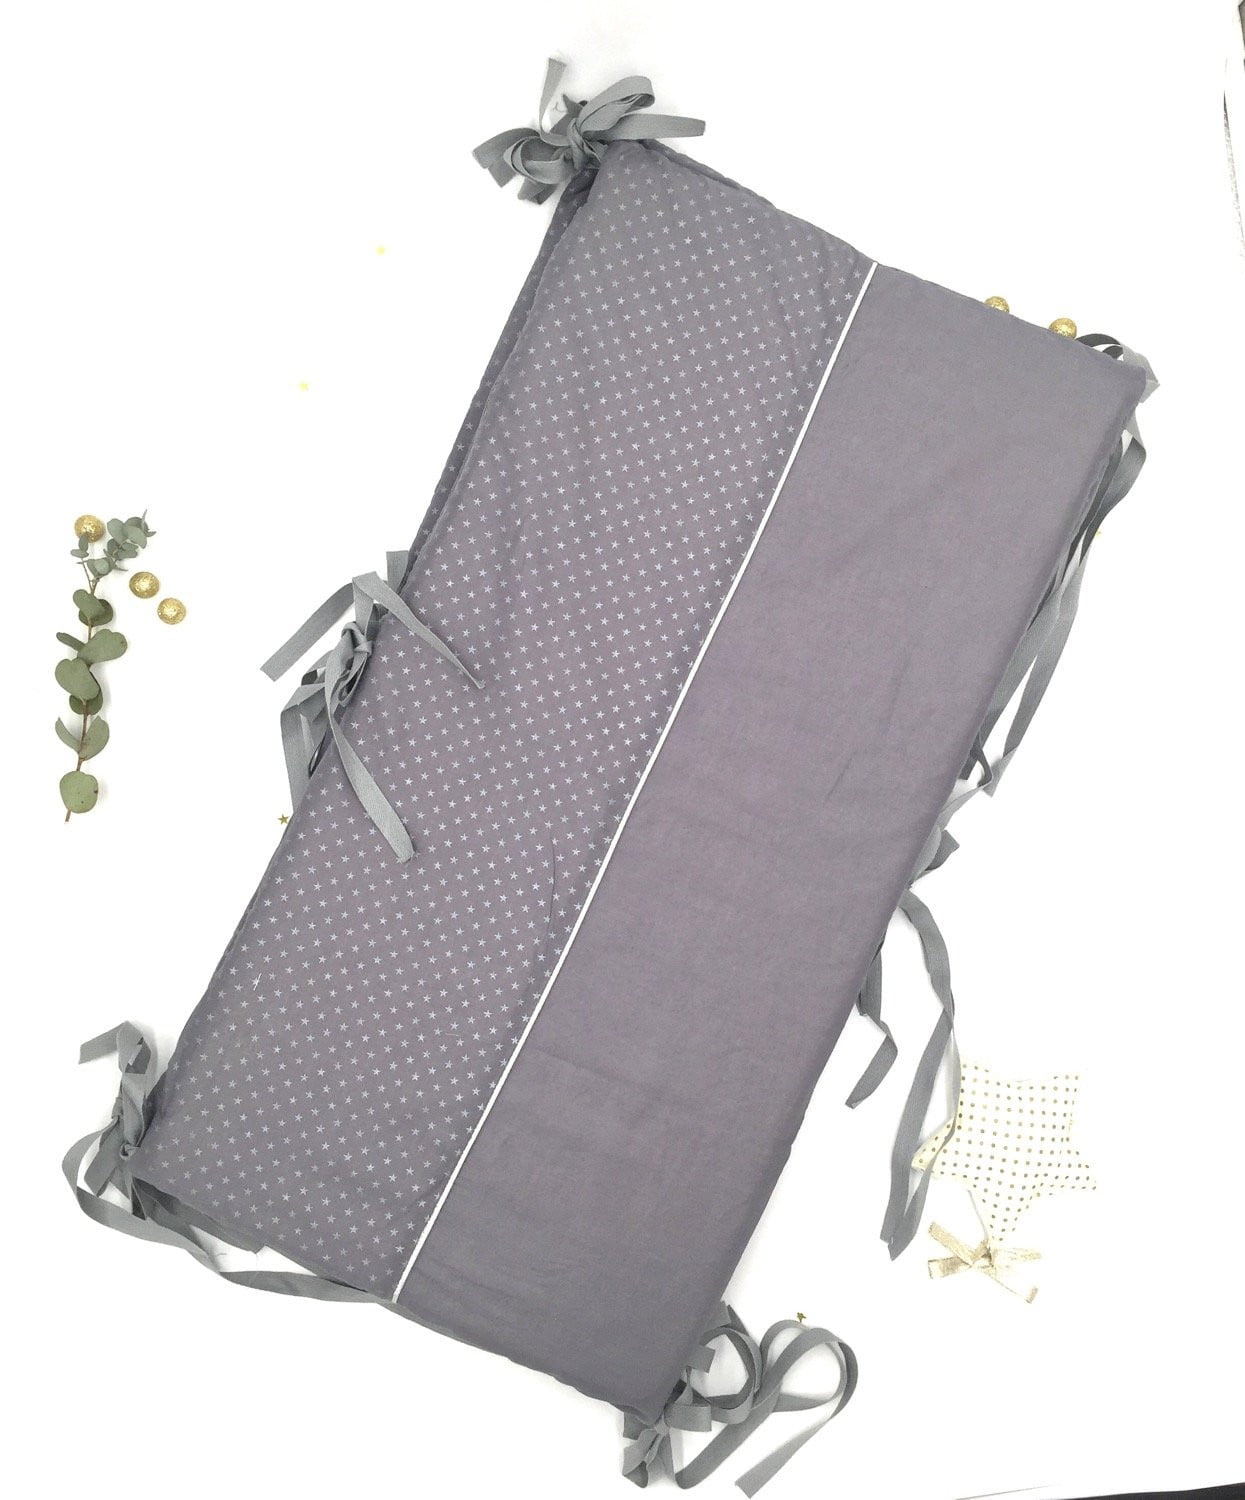 Tour de lit gris dehoussable - Crapaud Chou, le cadeau de naissance original et personnalisé